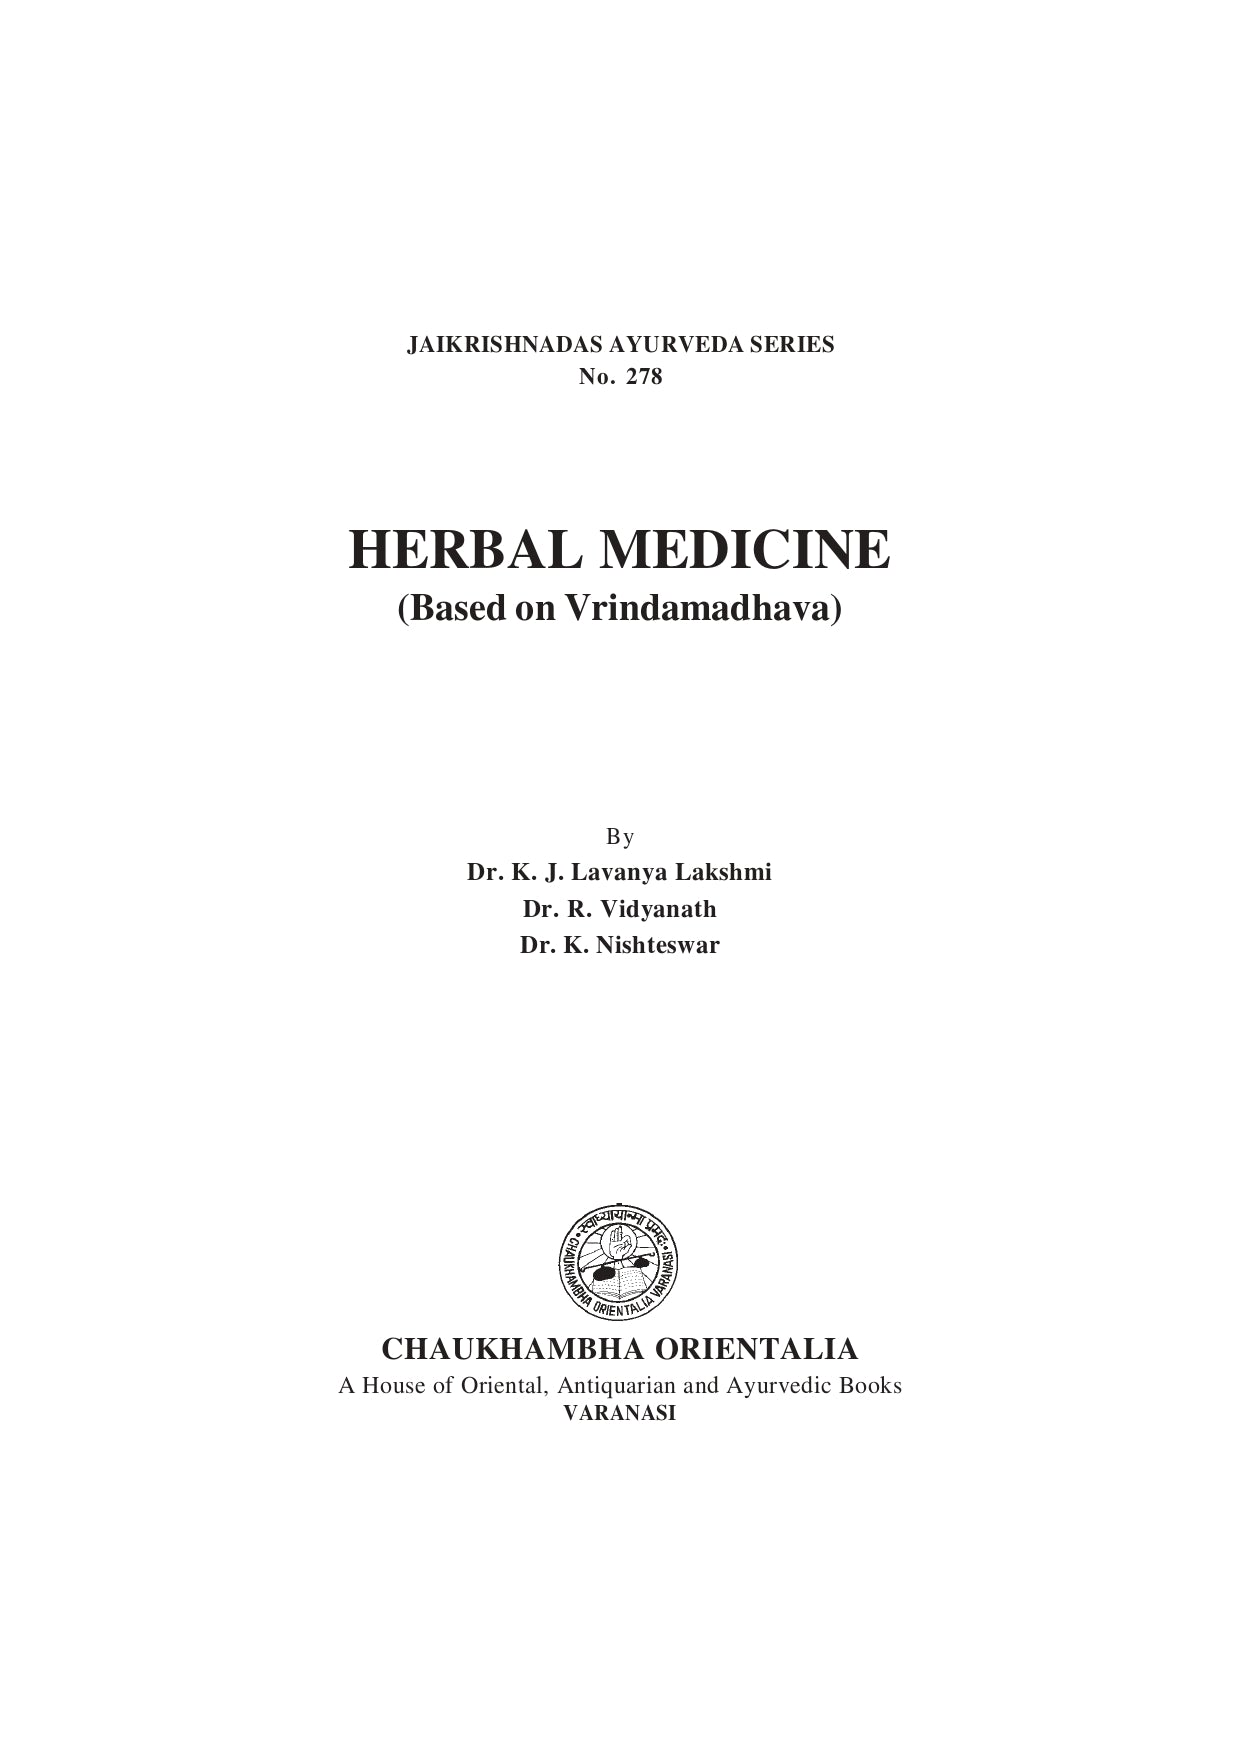 Chaukhambha Orientalia Herbal medicine (Based on Vrindamadhava)